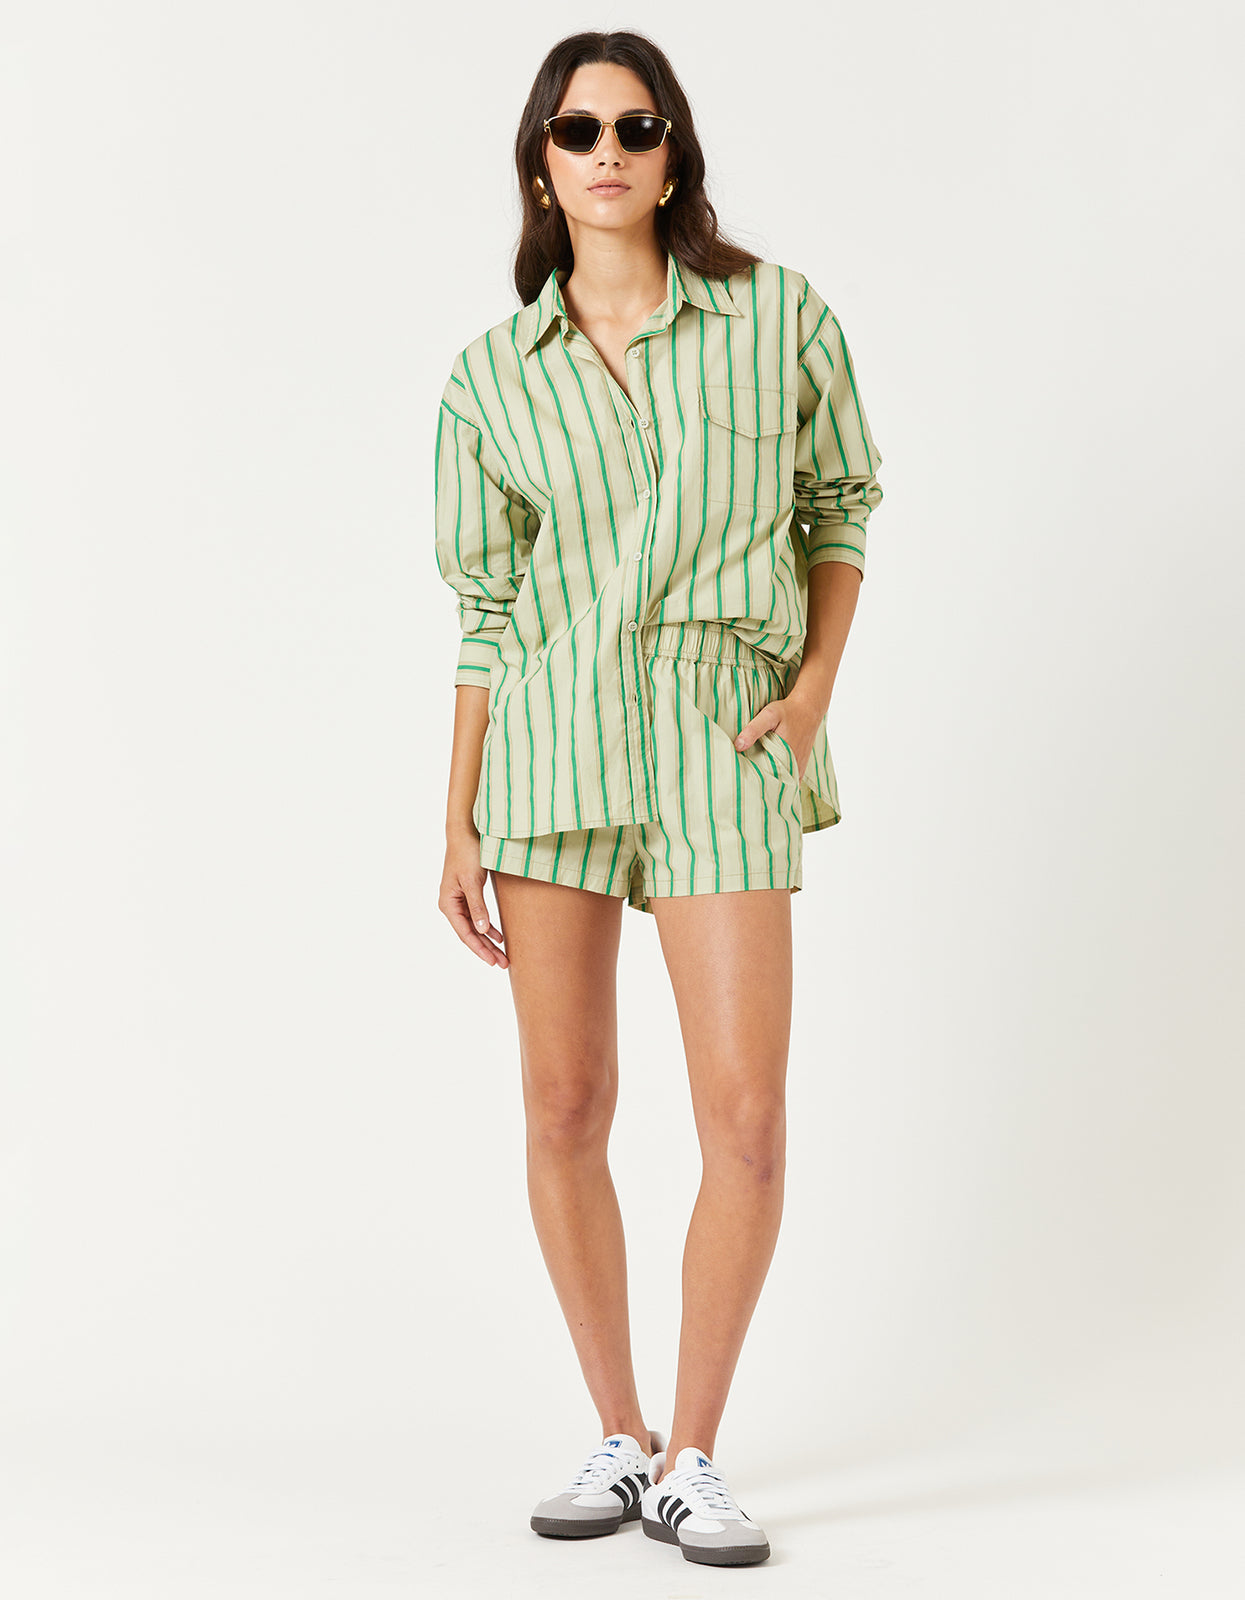 Superette | Nash Shirt - Green Stripe